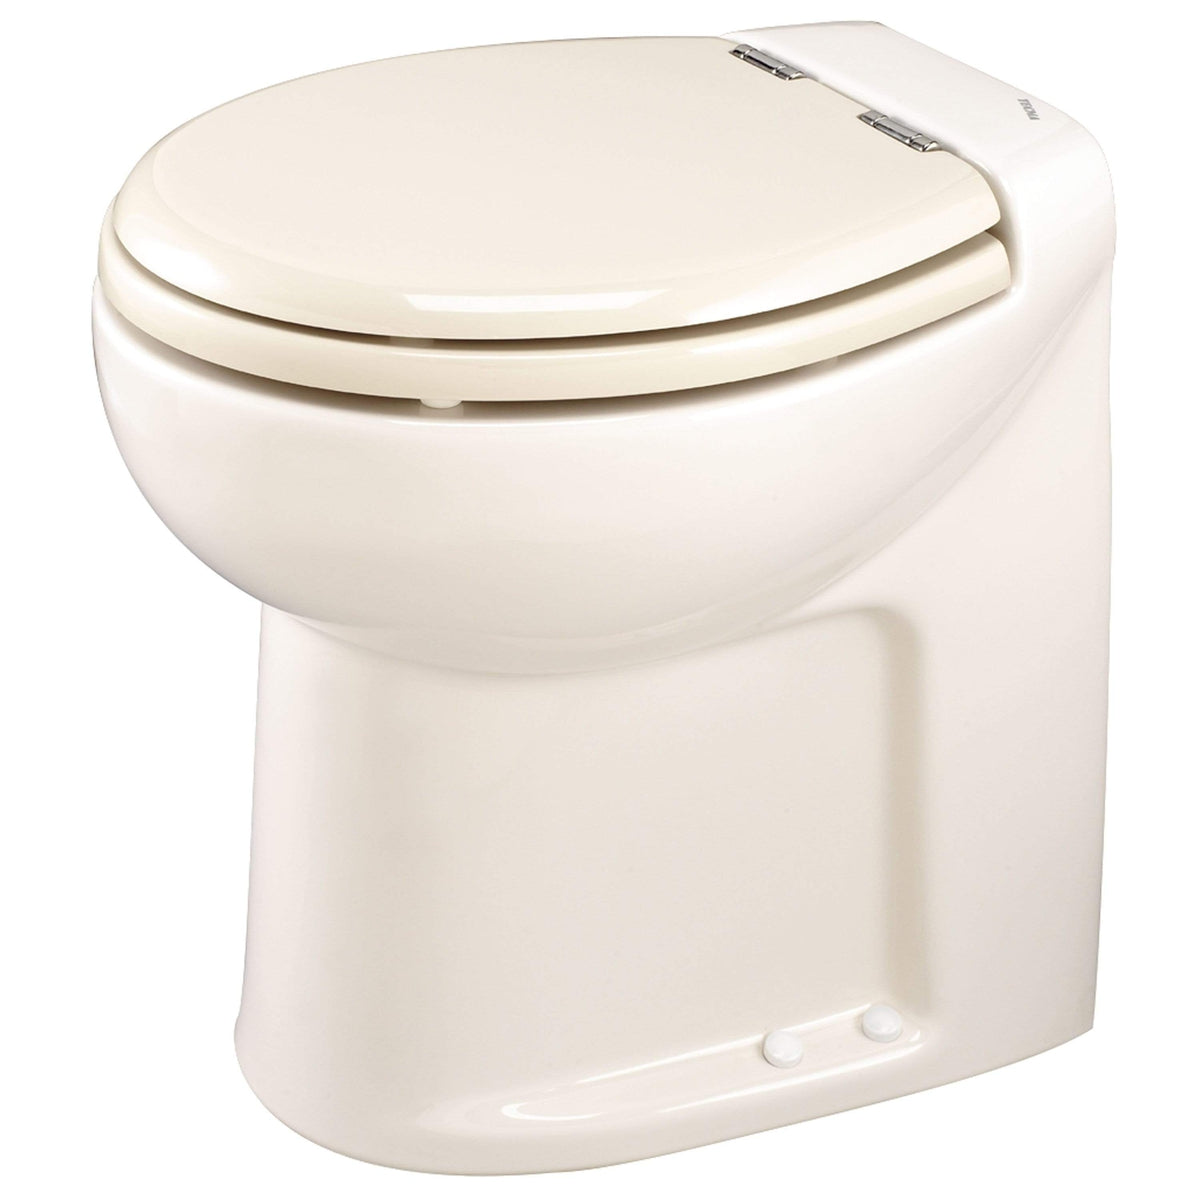 Thetford Not Qualified for Free Shipping Thetford Tecma Silence 1 Mode 12v RV Toilet White #38044